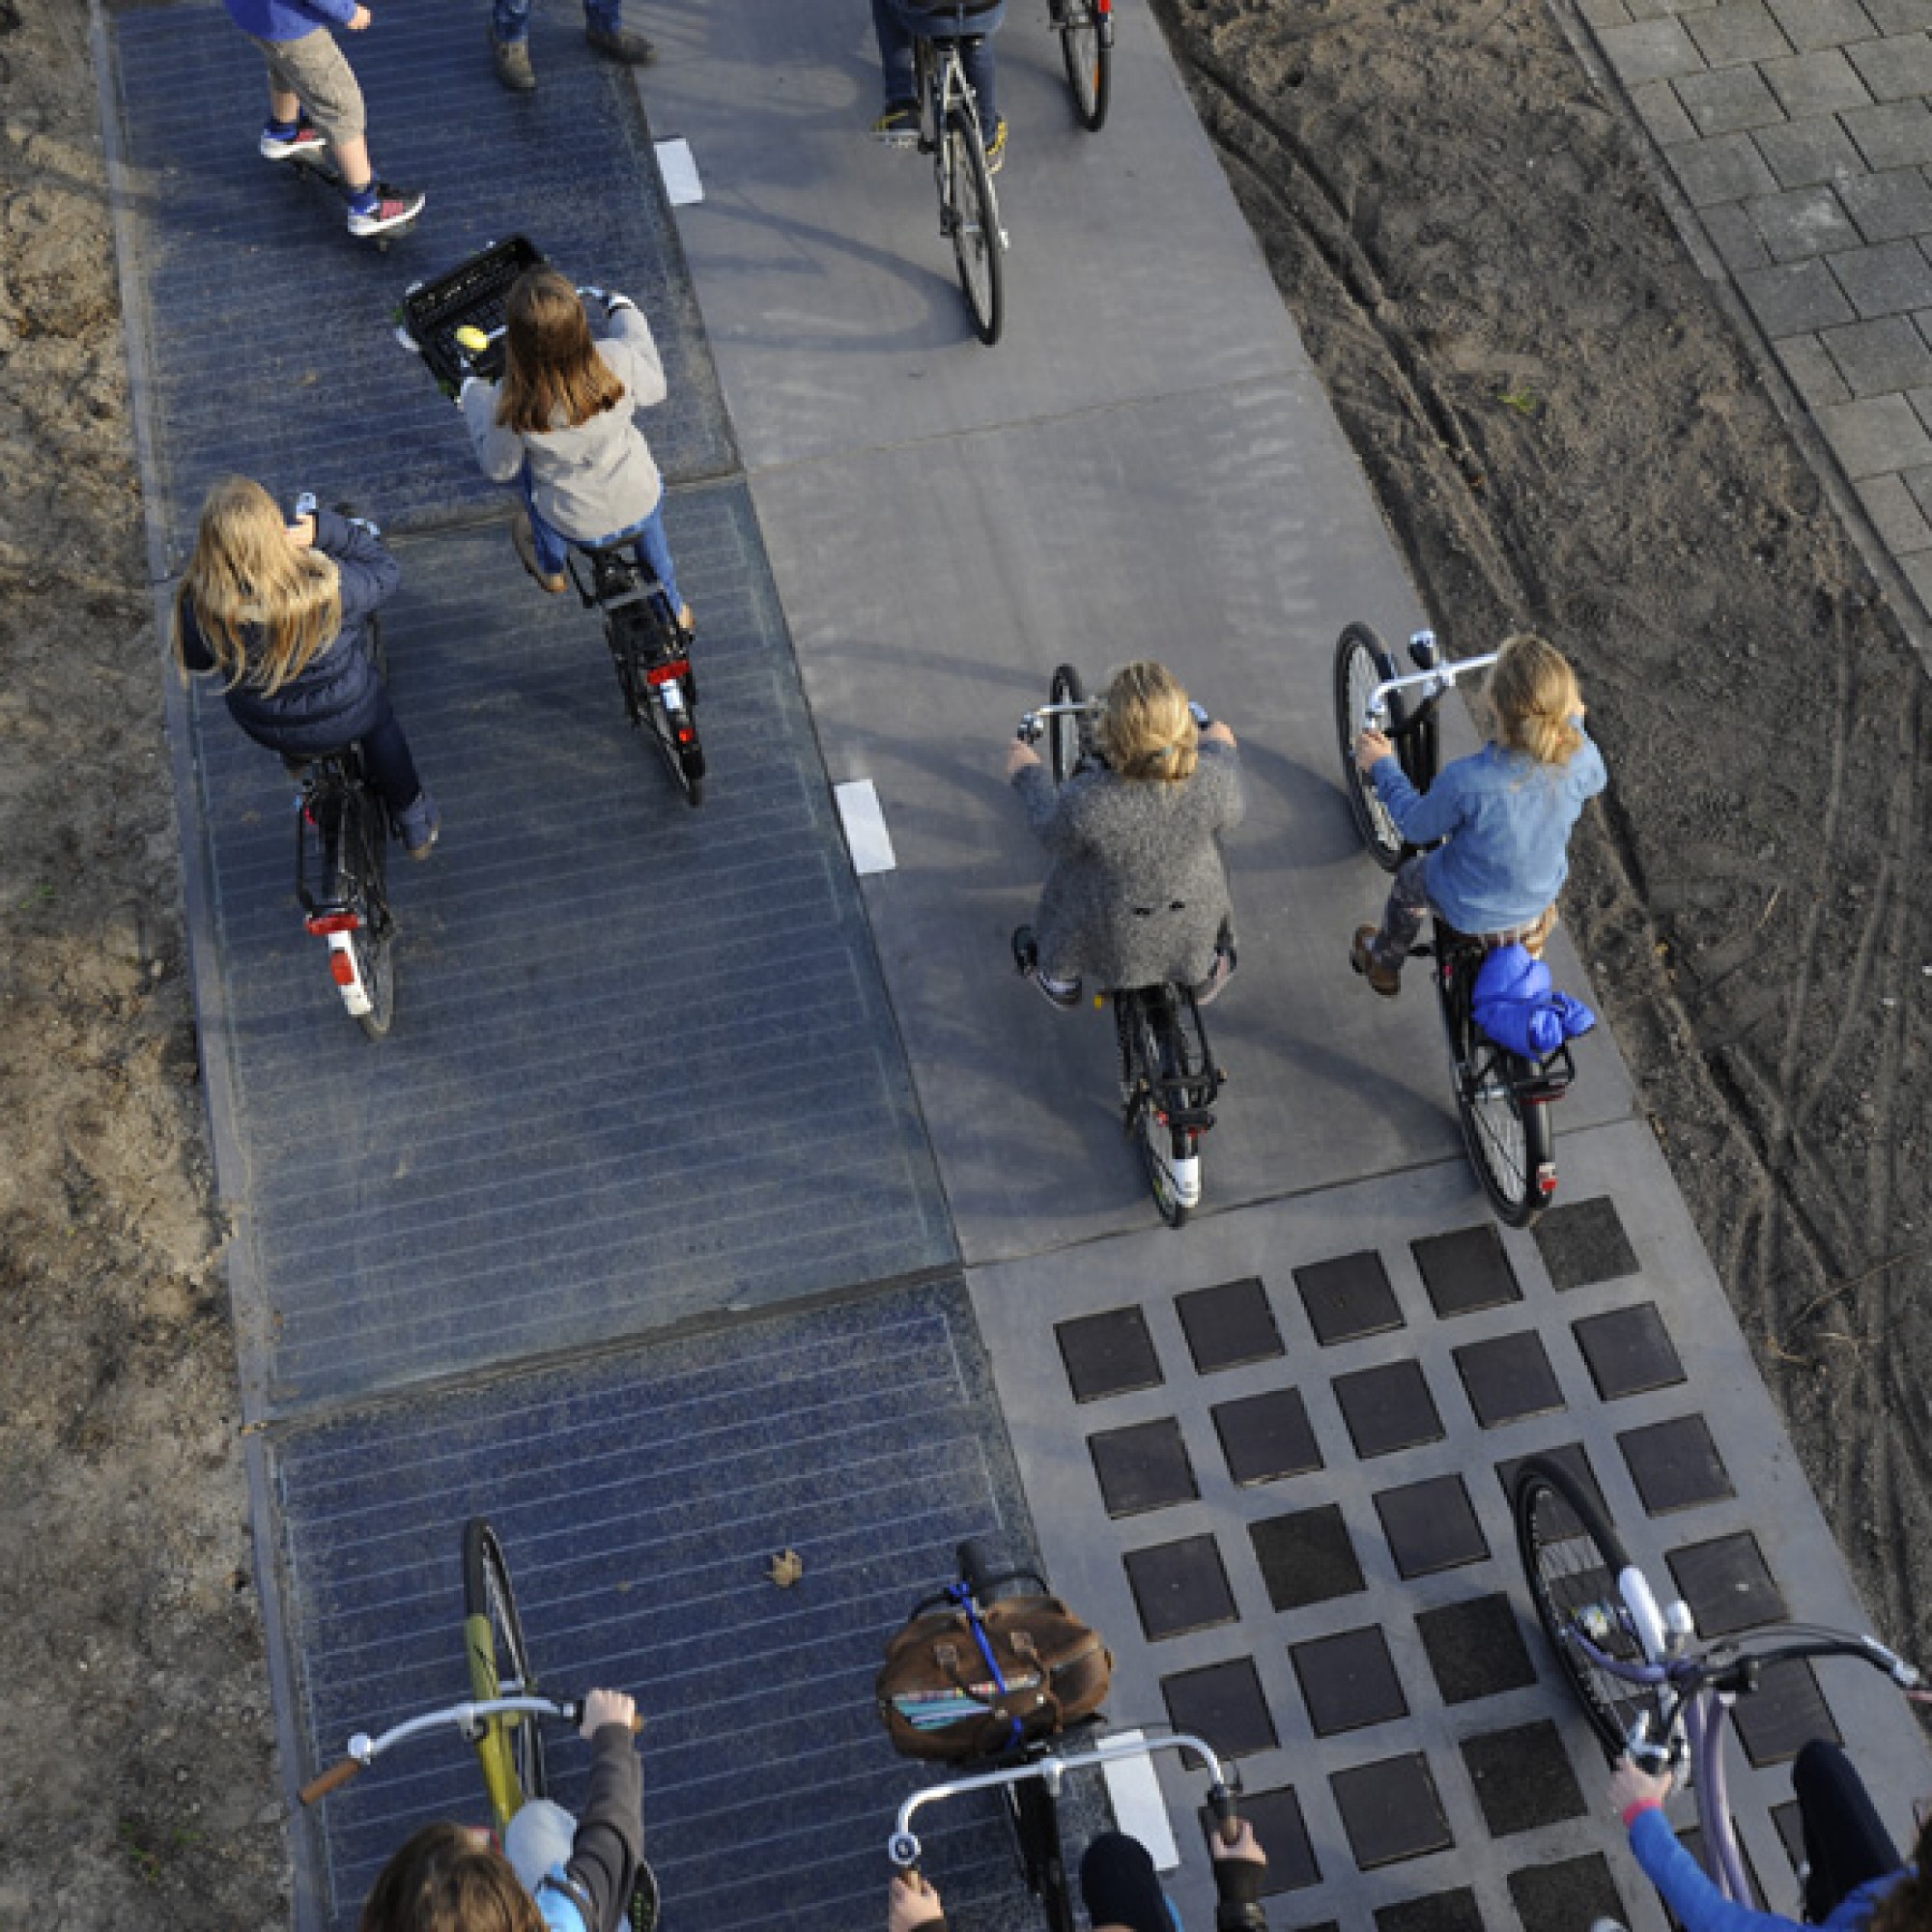 Die Velofahrer merken kaum einen Unterschied, wenn sie über die mit Solarpanels bedeckte Fahrbahn (links) fahren. (Bild: zvg)